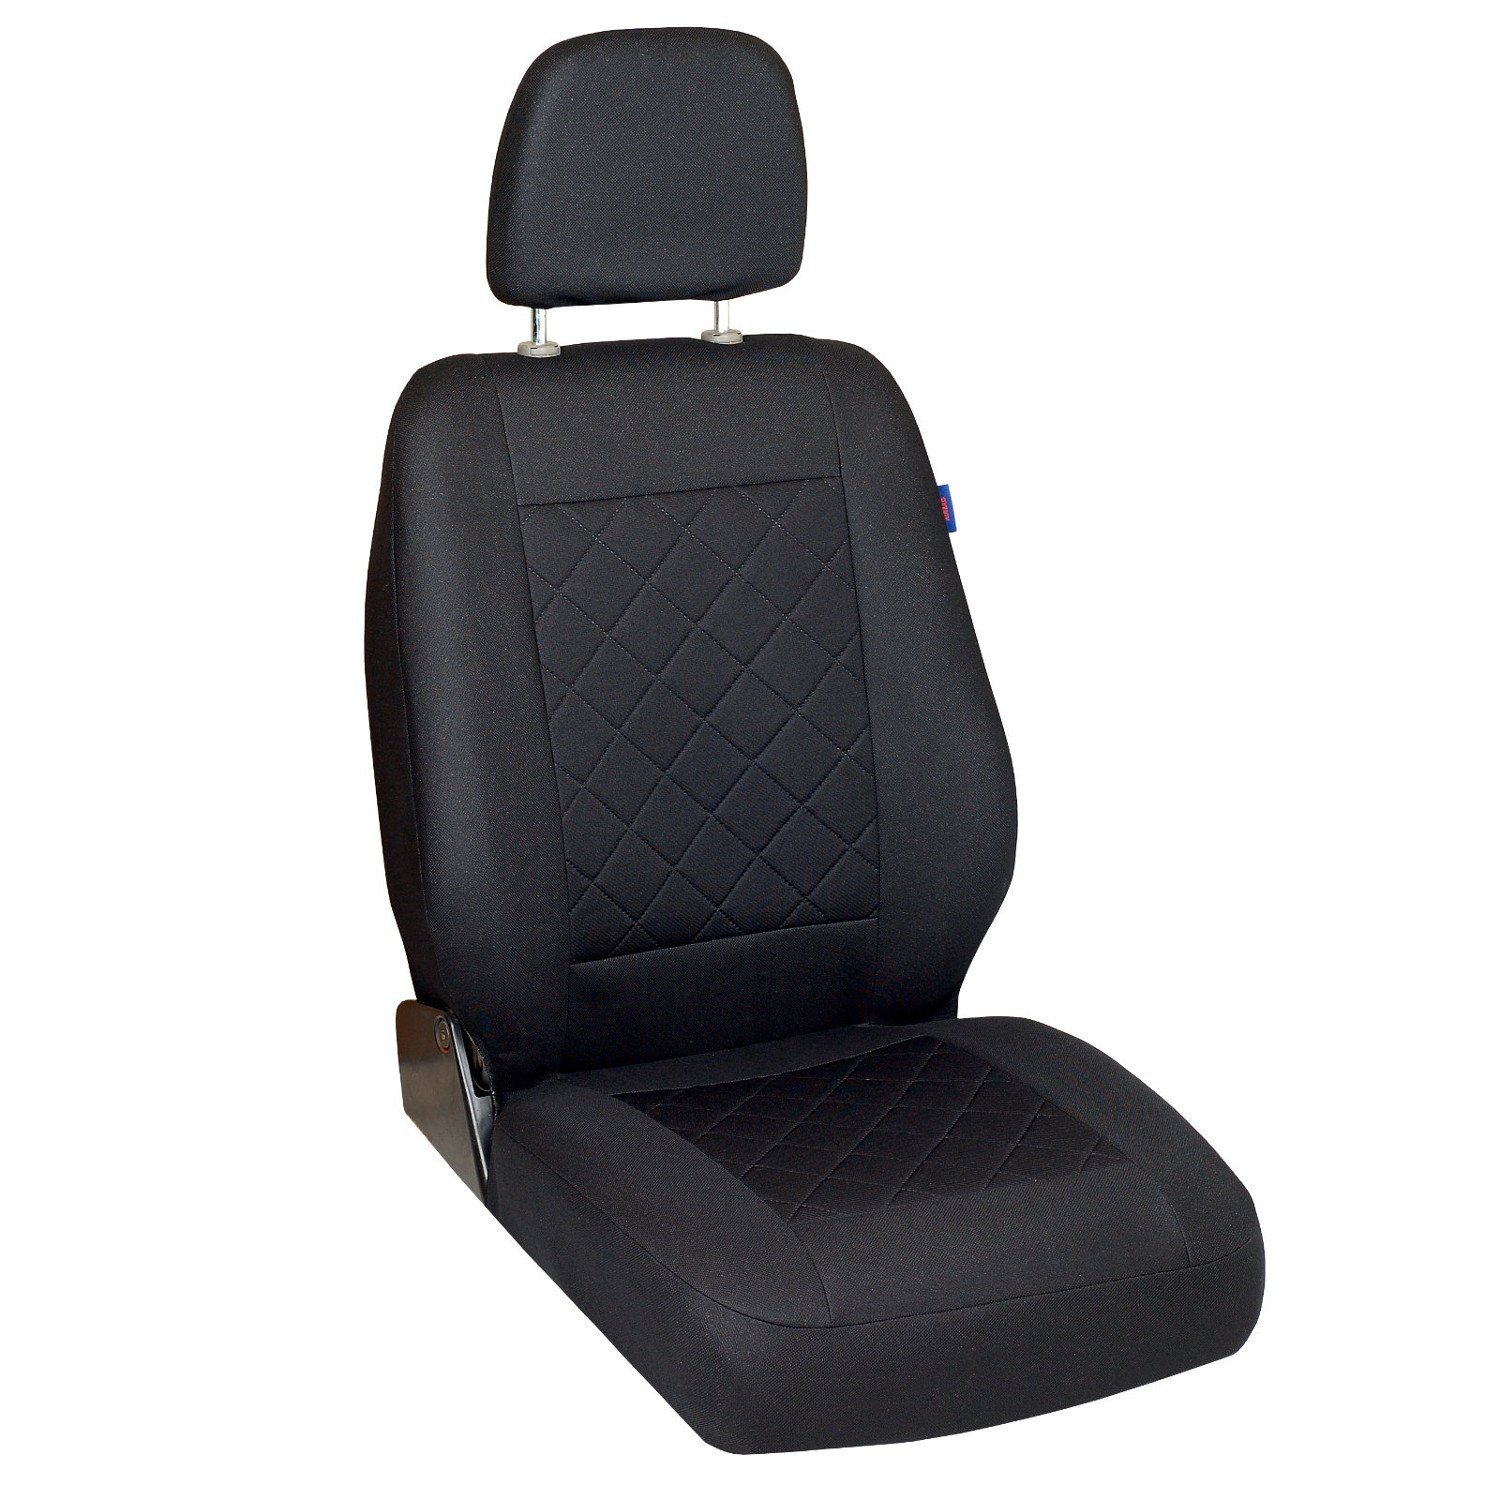 Zakschneider Boxer Sitzbezug - Fahrersitz - Farbe Premium Schwarz gepresstes Karomuster von Zakschneider